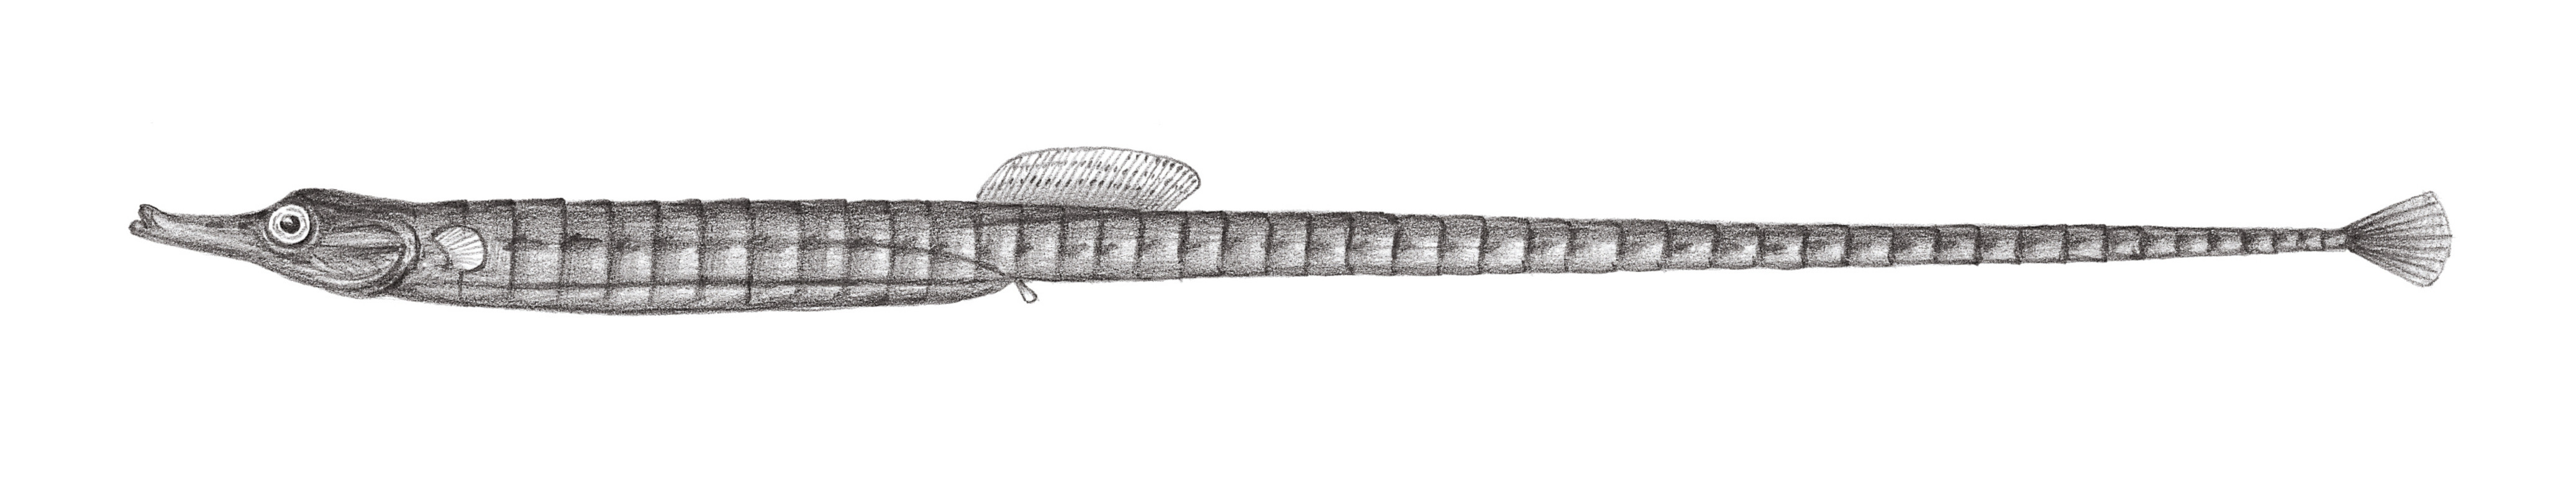 829.	藍點多環海龍 Hippichthys cyanospilus (Bleeker, 1854)